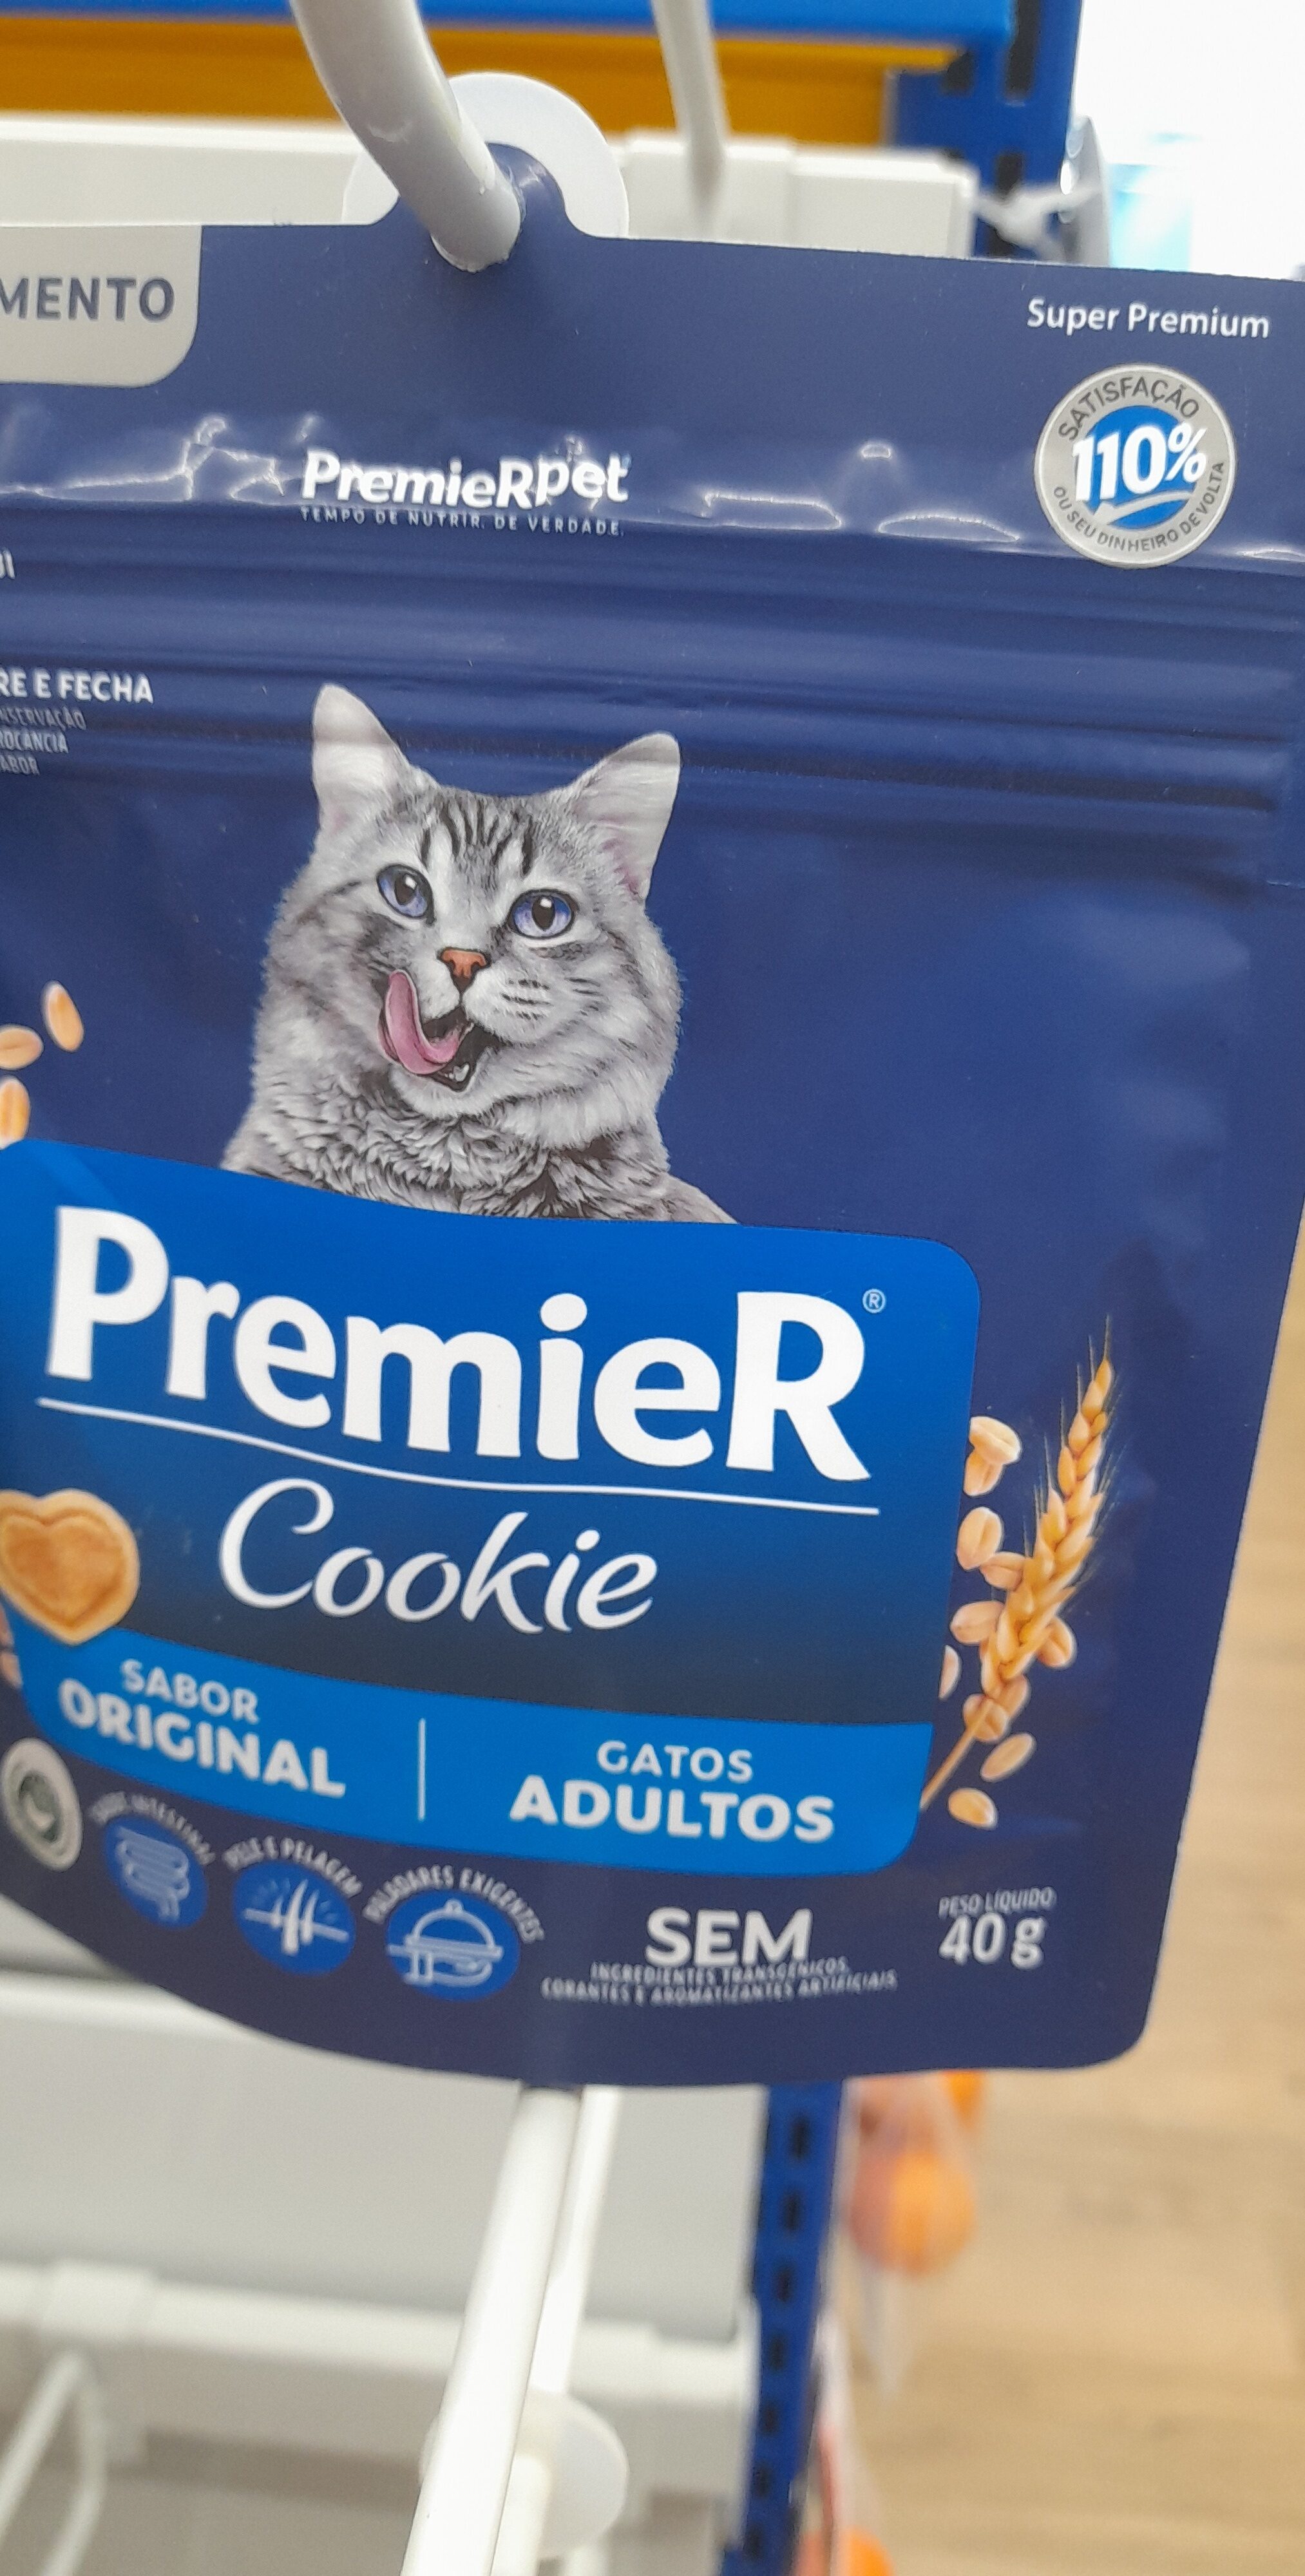 Premier Cookie Gatos - Product - pt